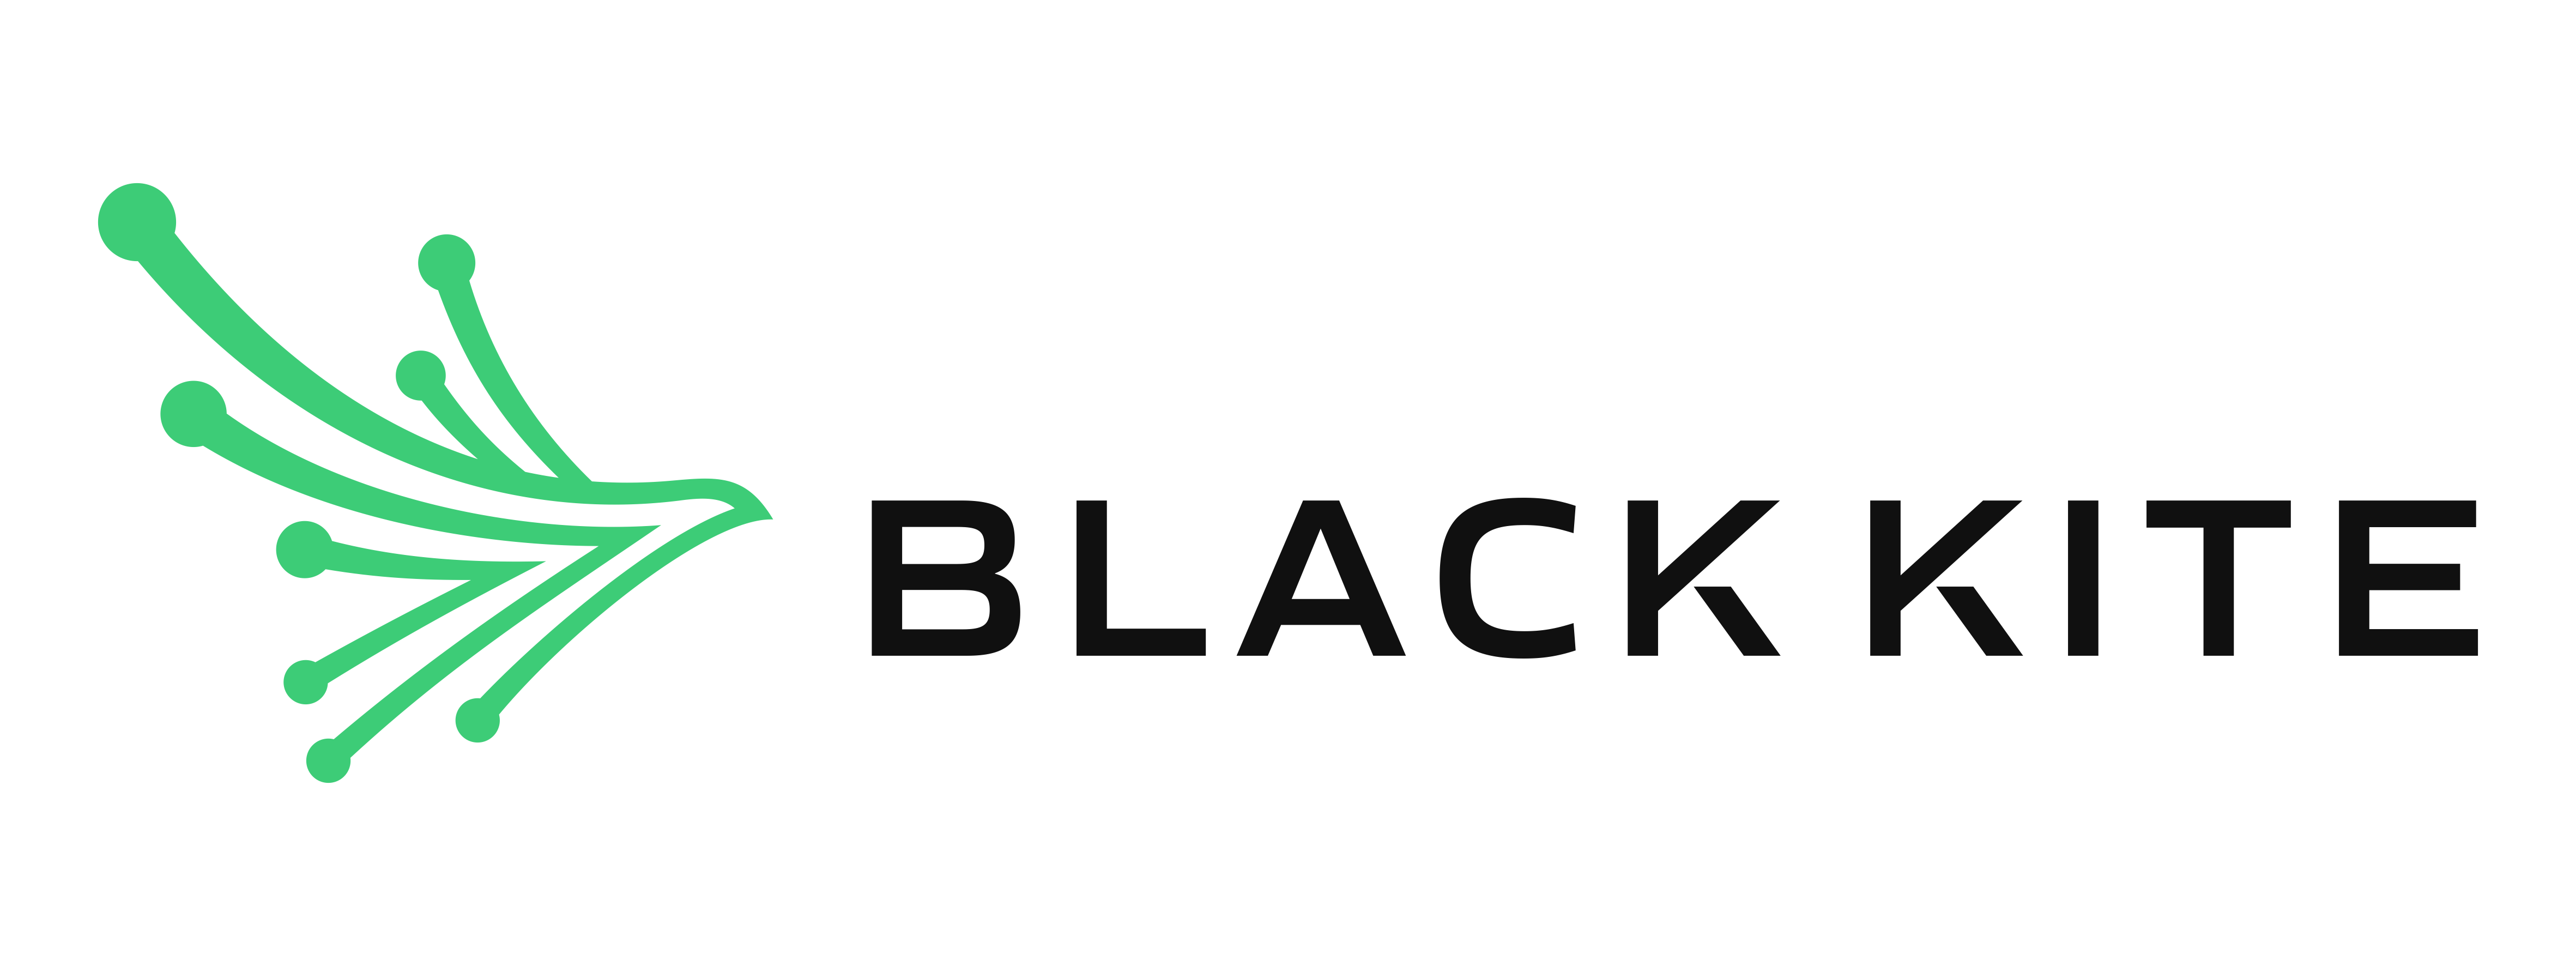 black-kite-logo-horizontal-for-light-bg.png